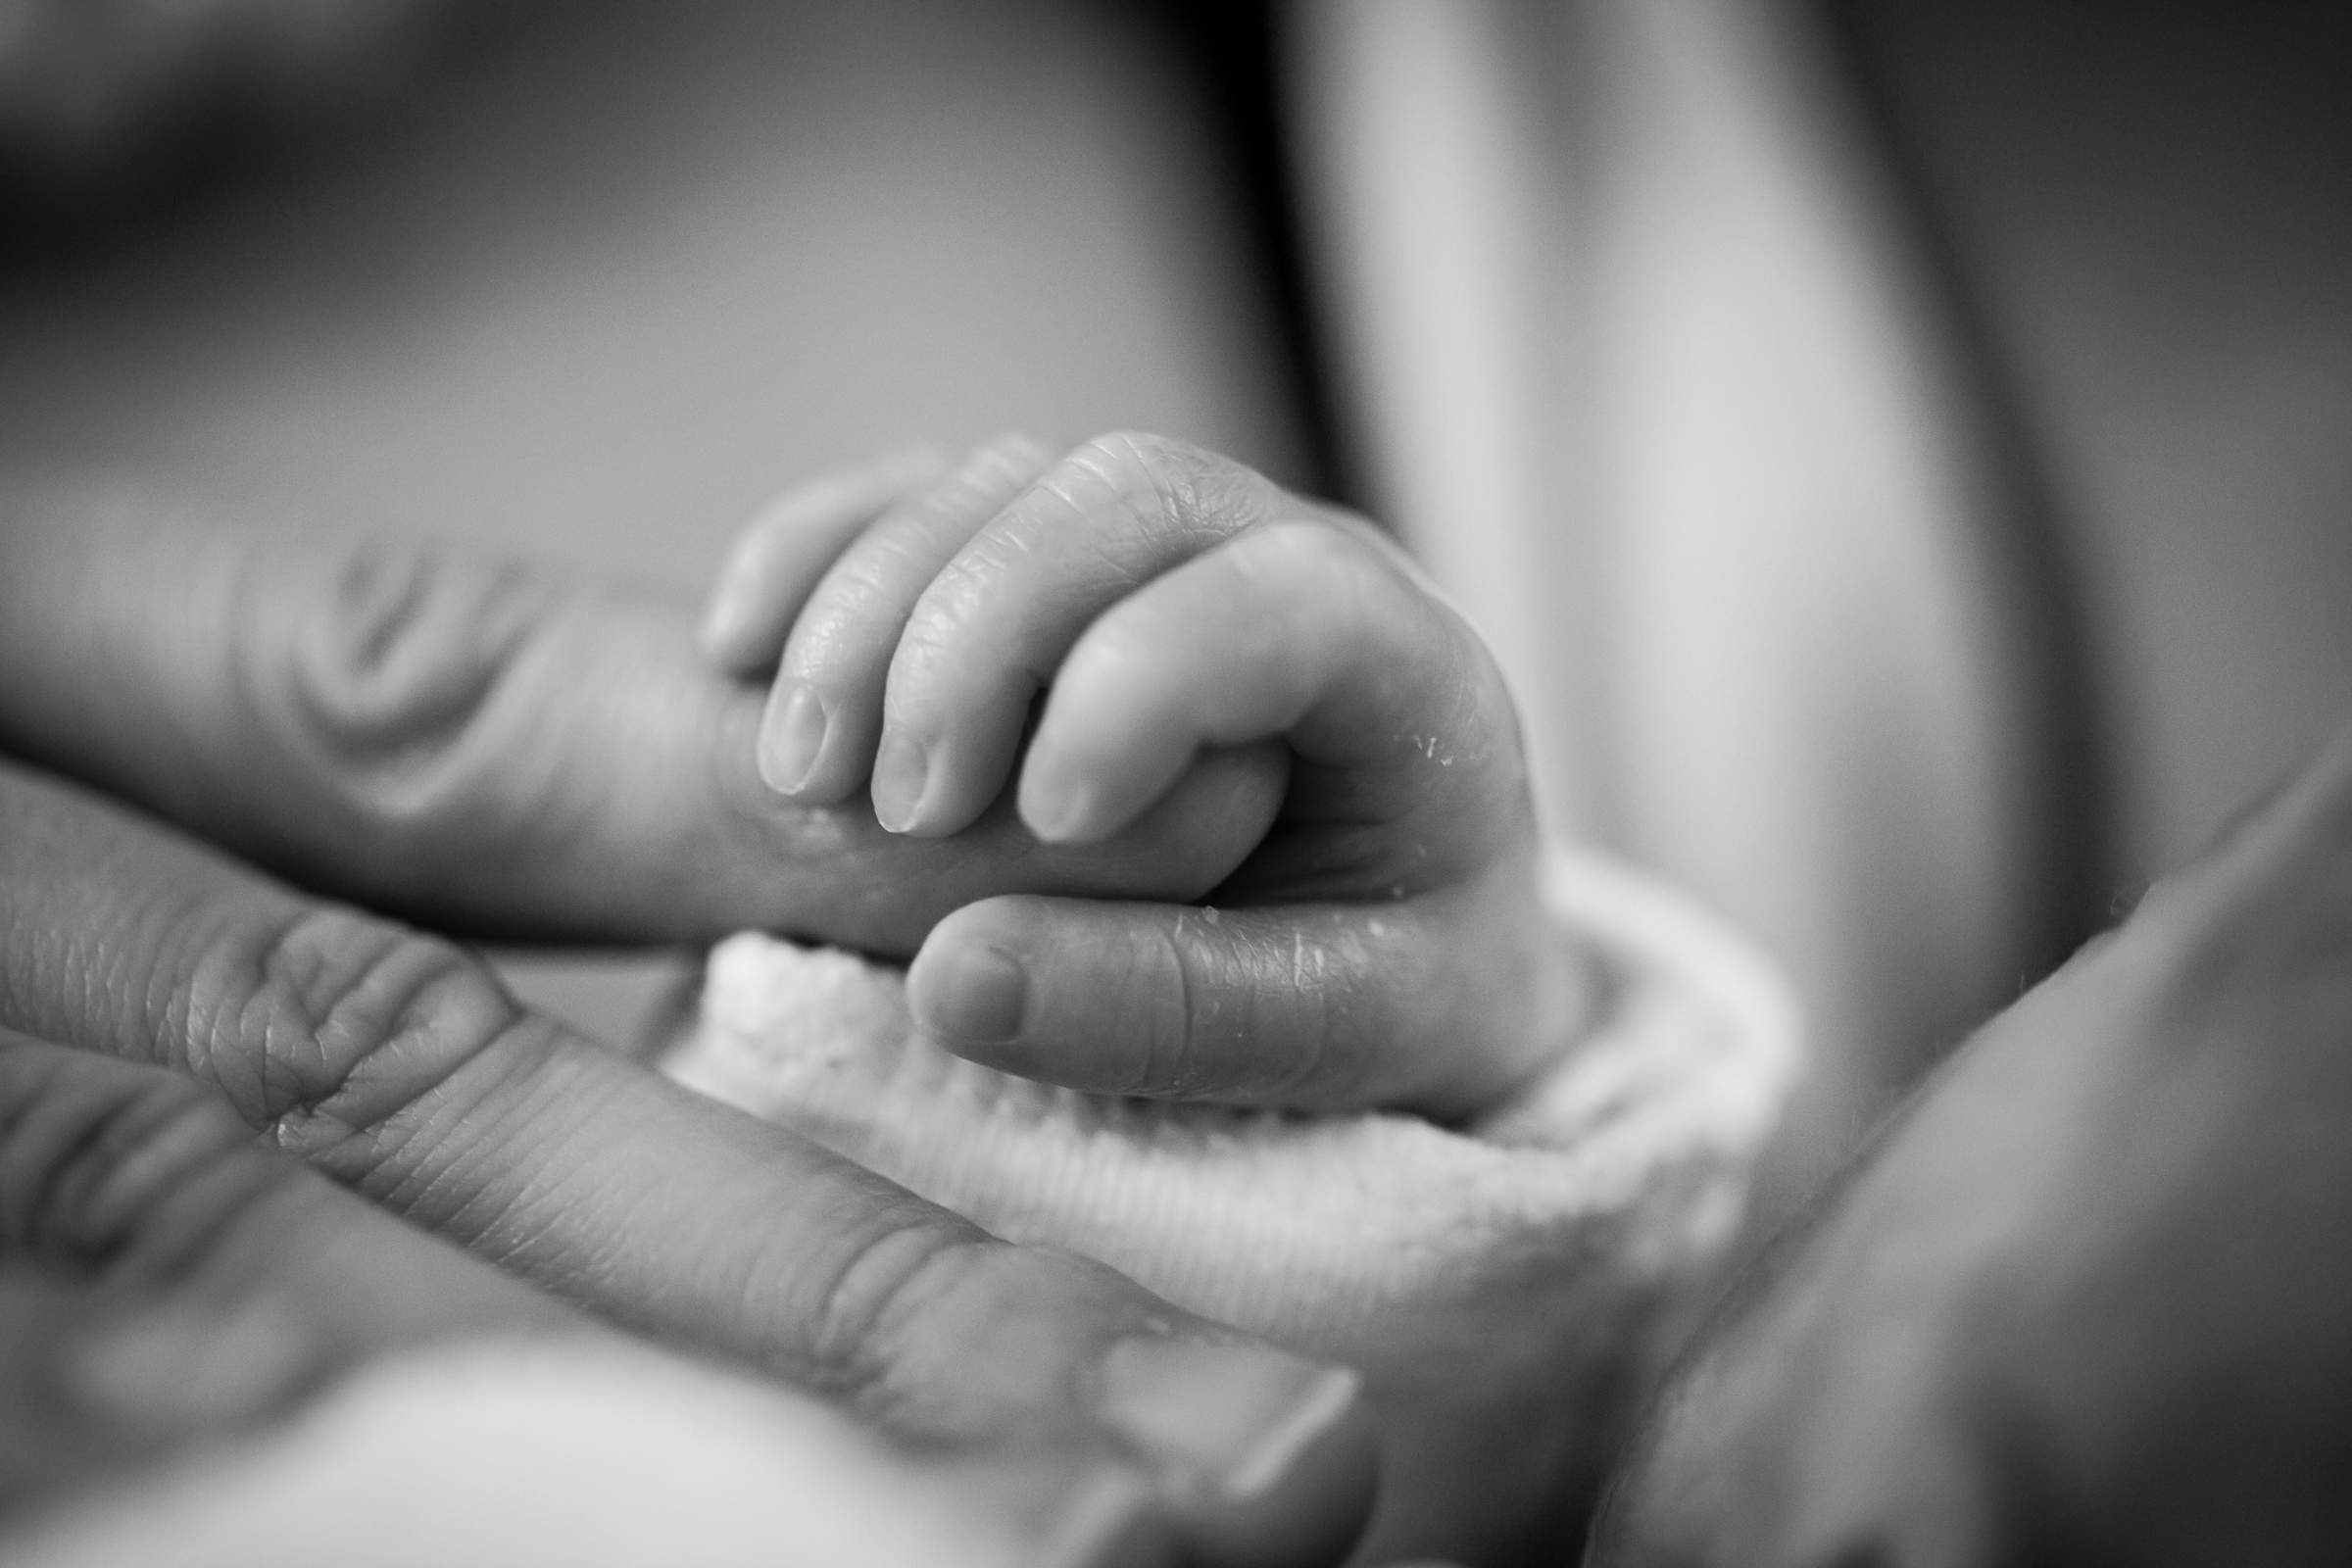 Infant holding adult's finger